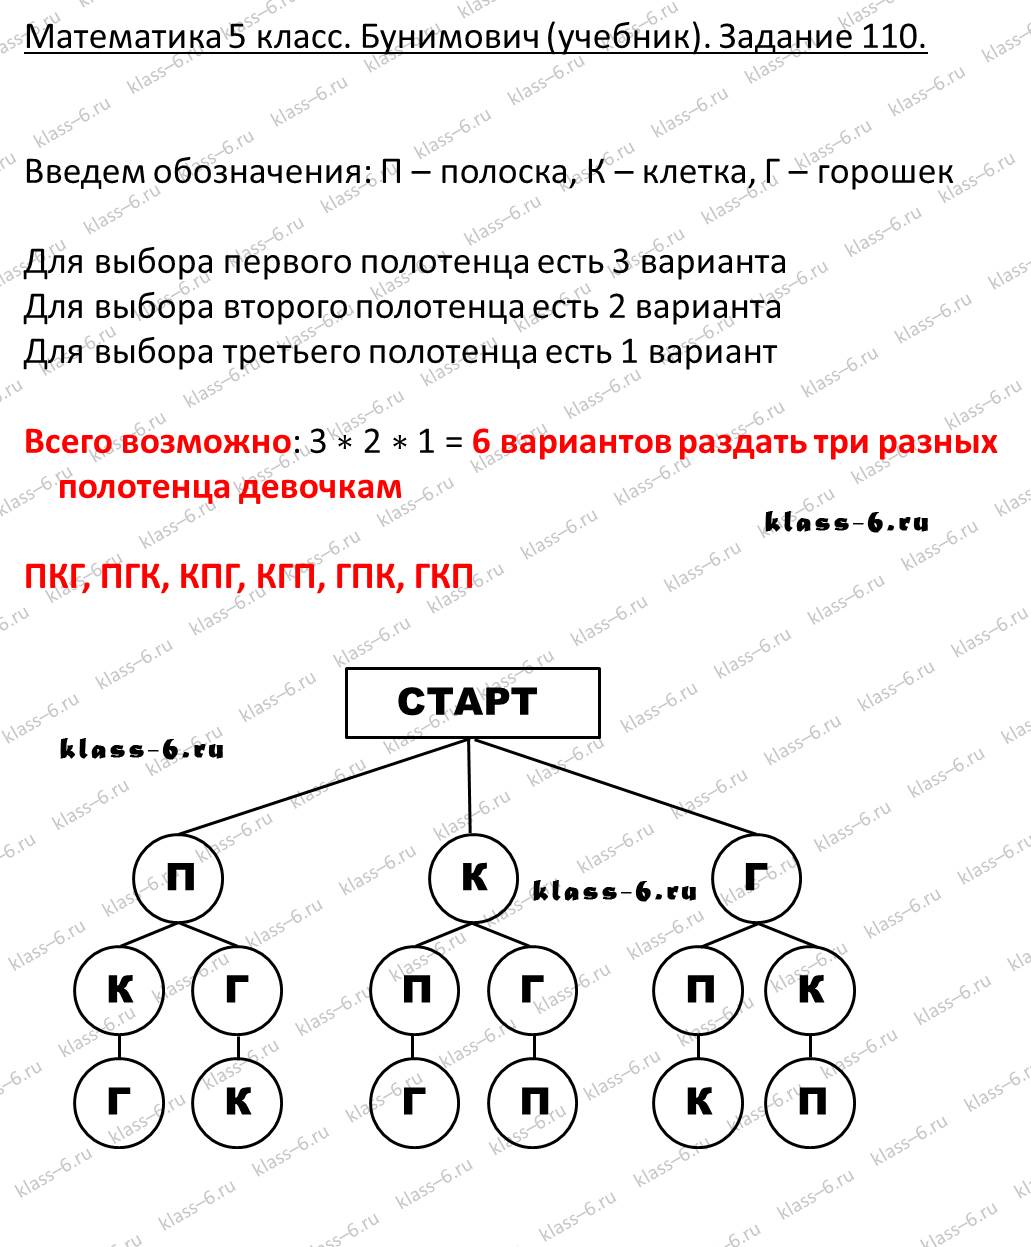 решебник и гдз по математике учебник Бунимович 5 класс задание 110